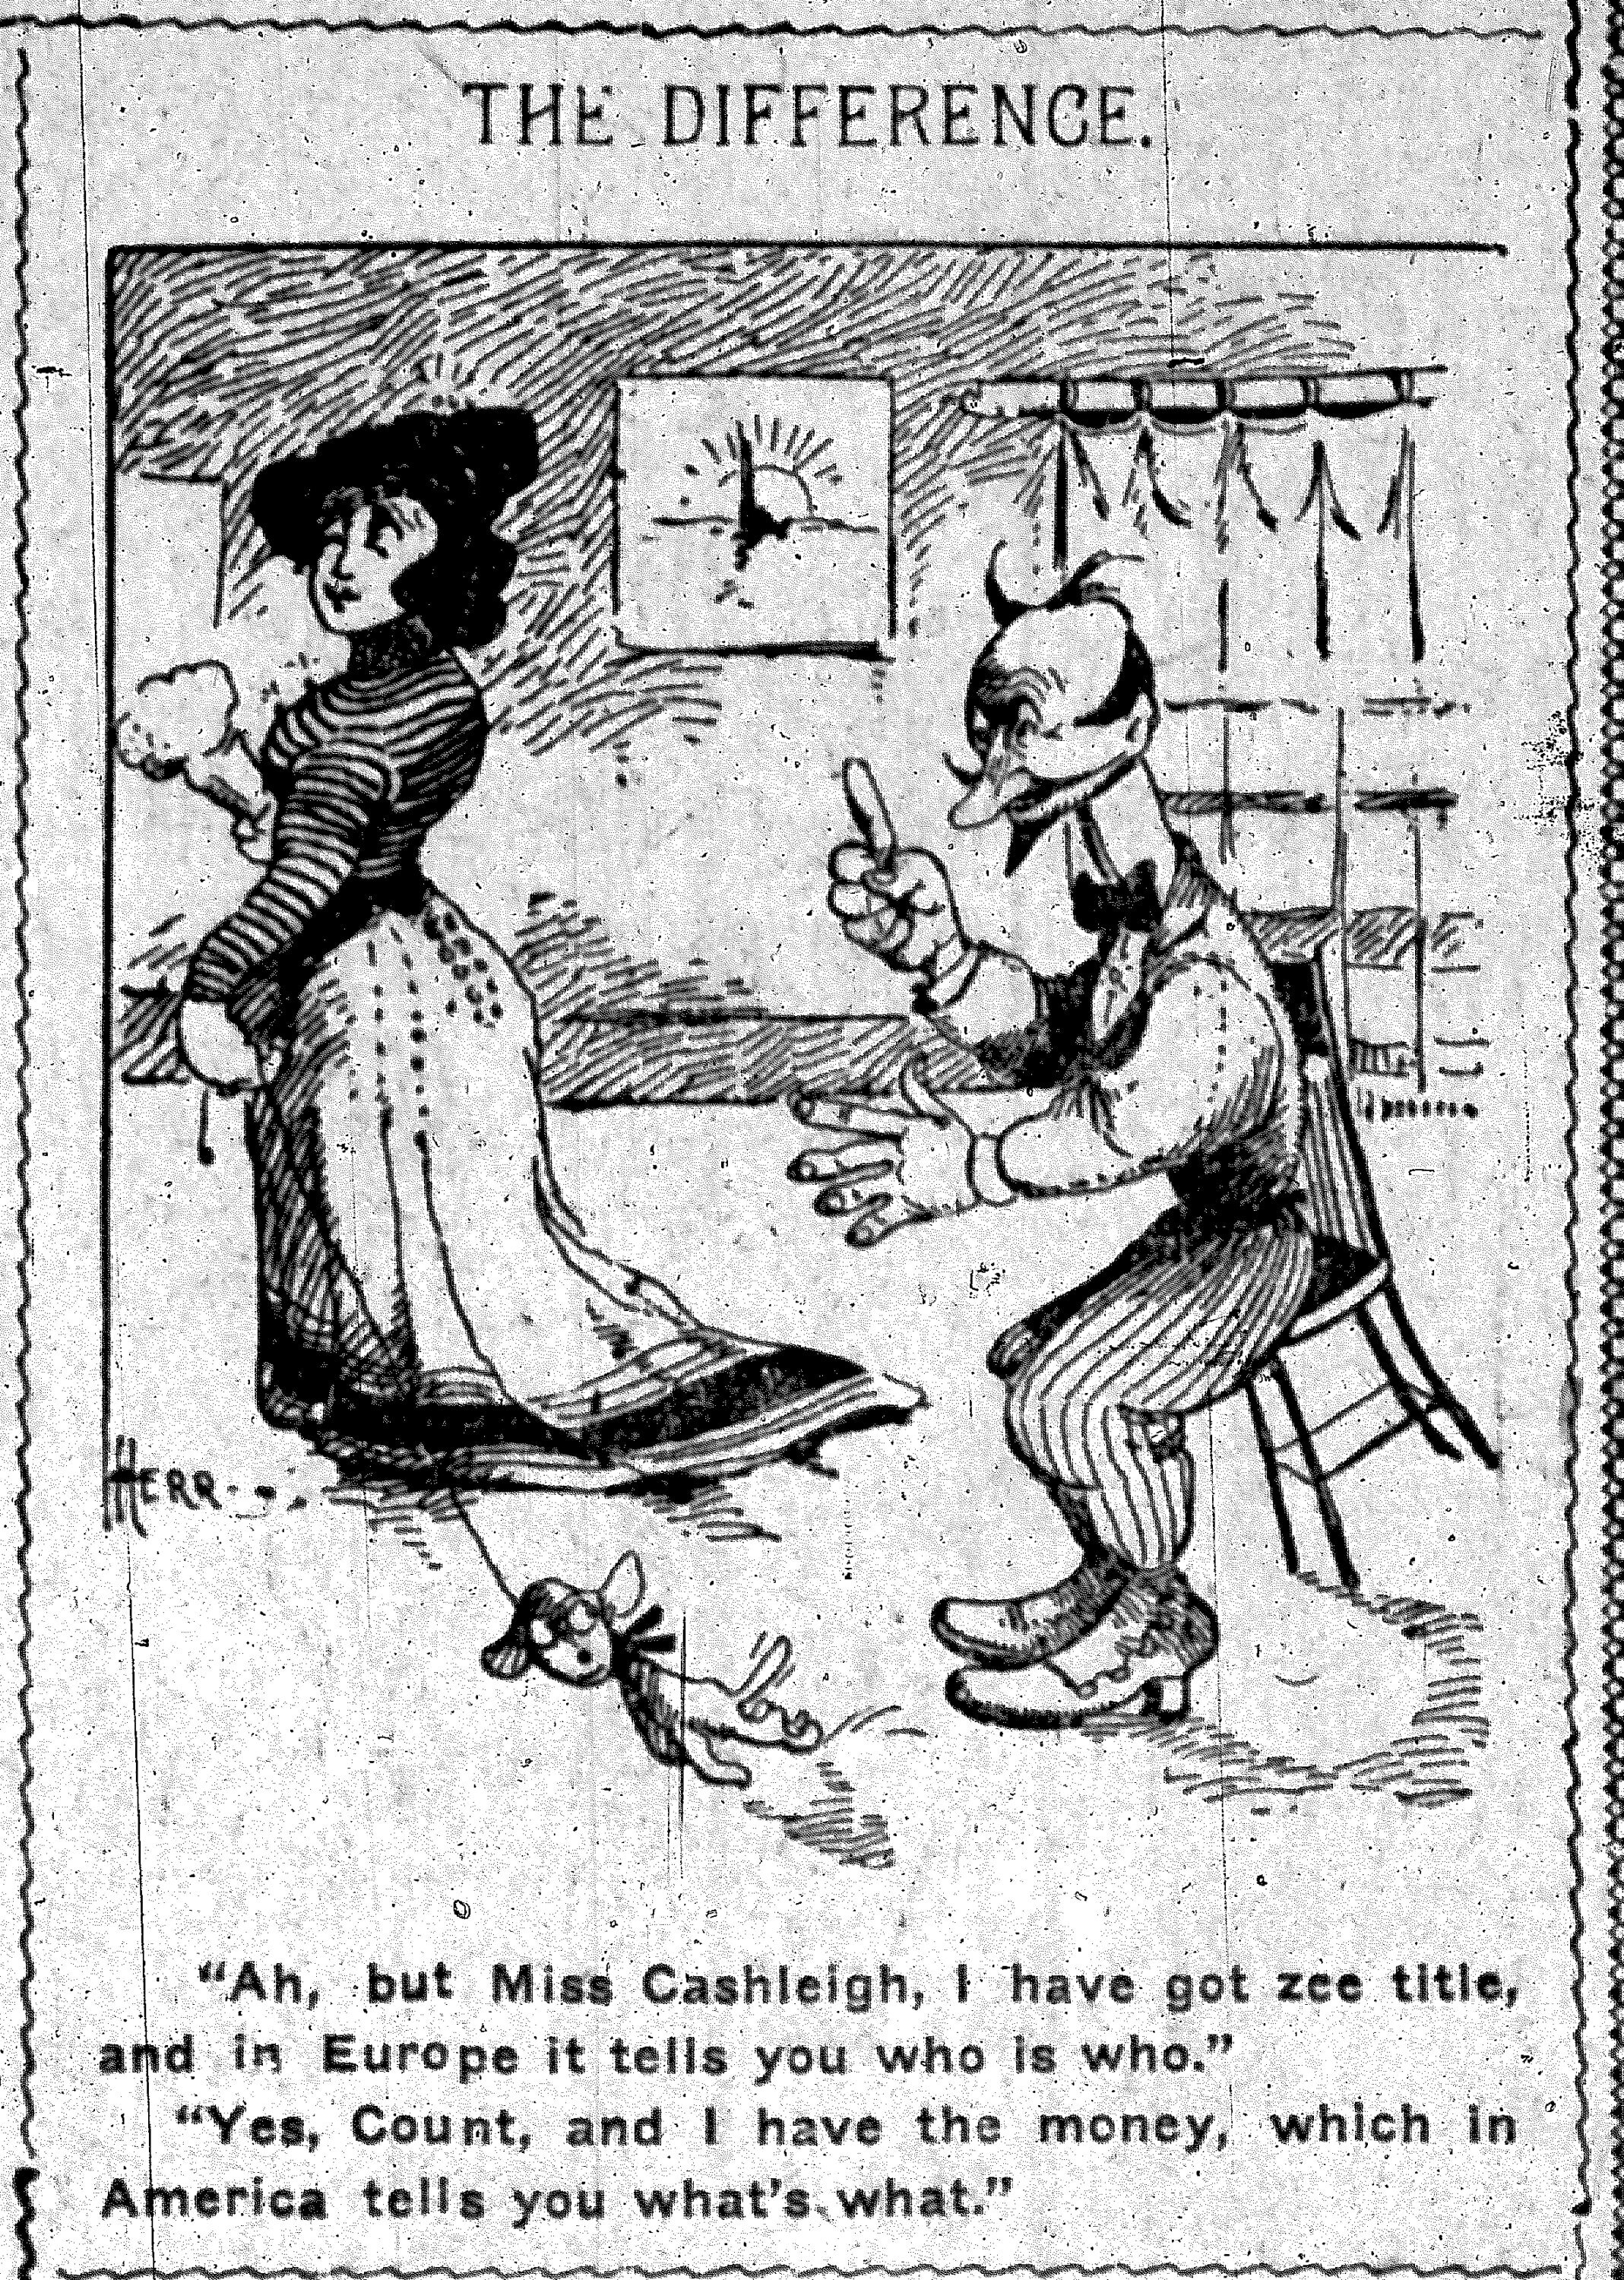 04-nyej-03-29-1901-herriman-cartoon.jpg